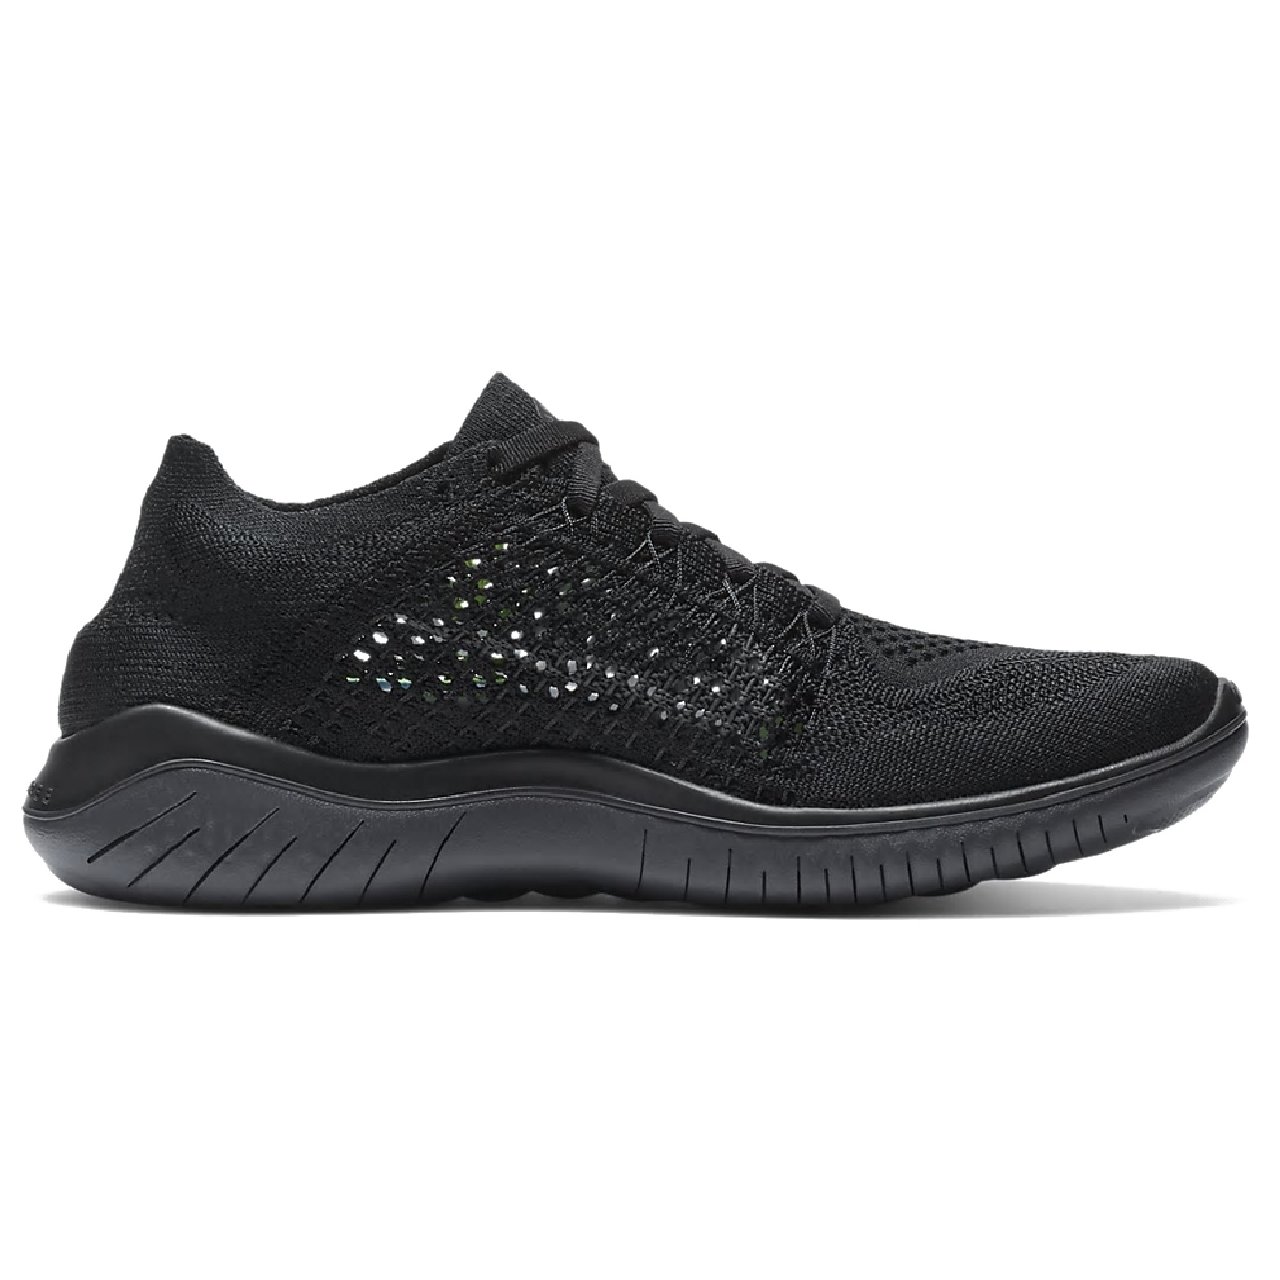 Спортивная обувь w Nike Free RN Flyknit 2018 black/anthracite